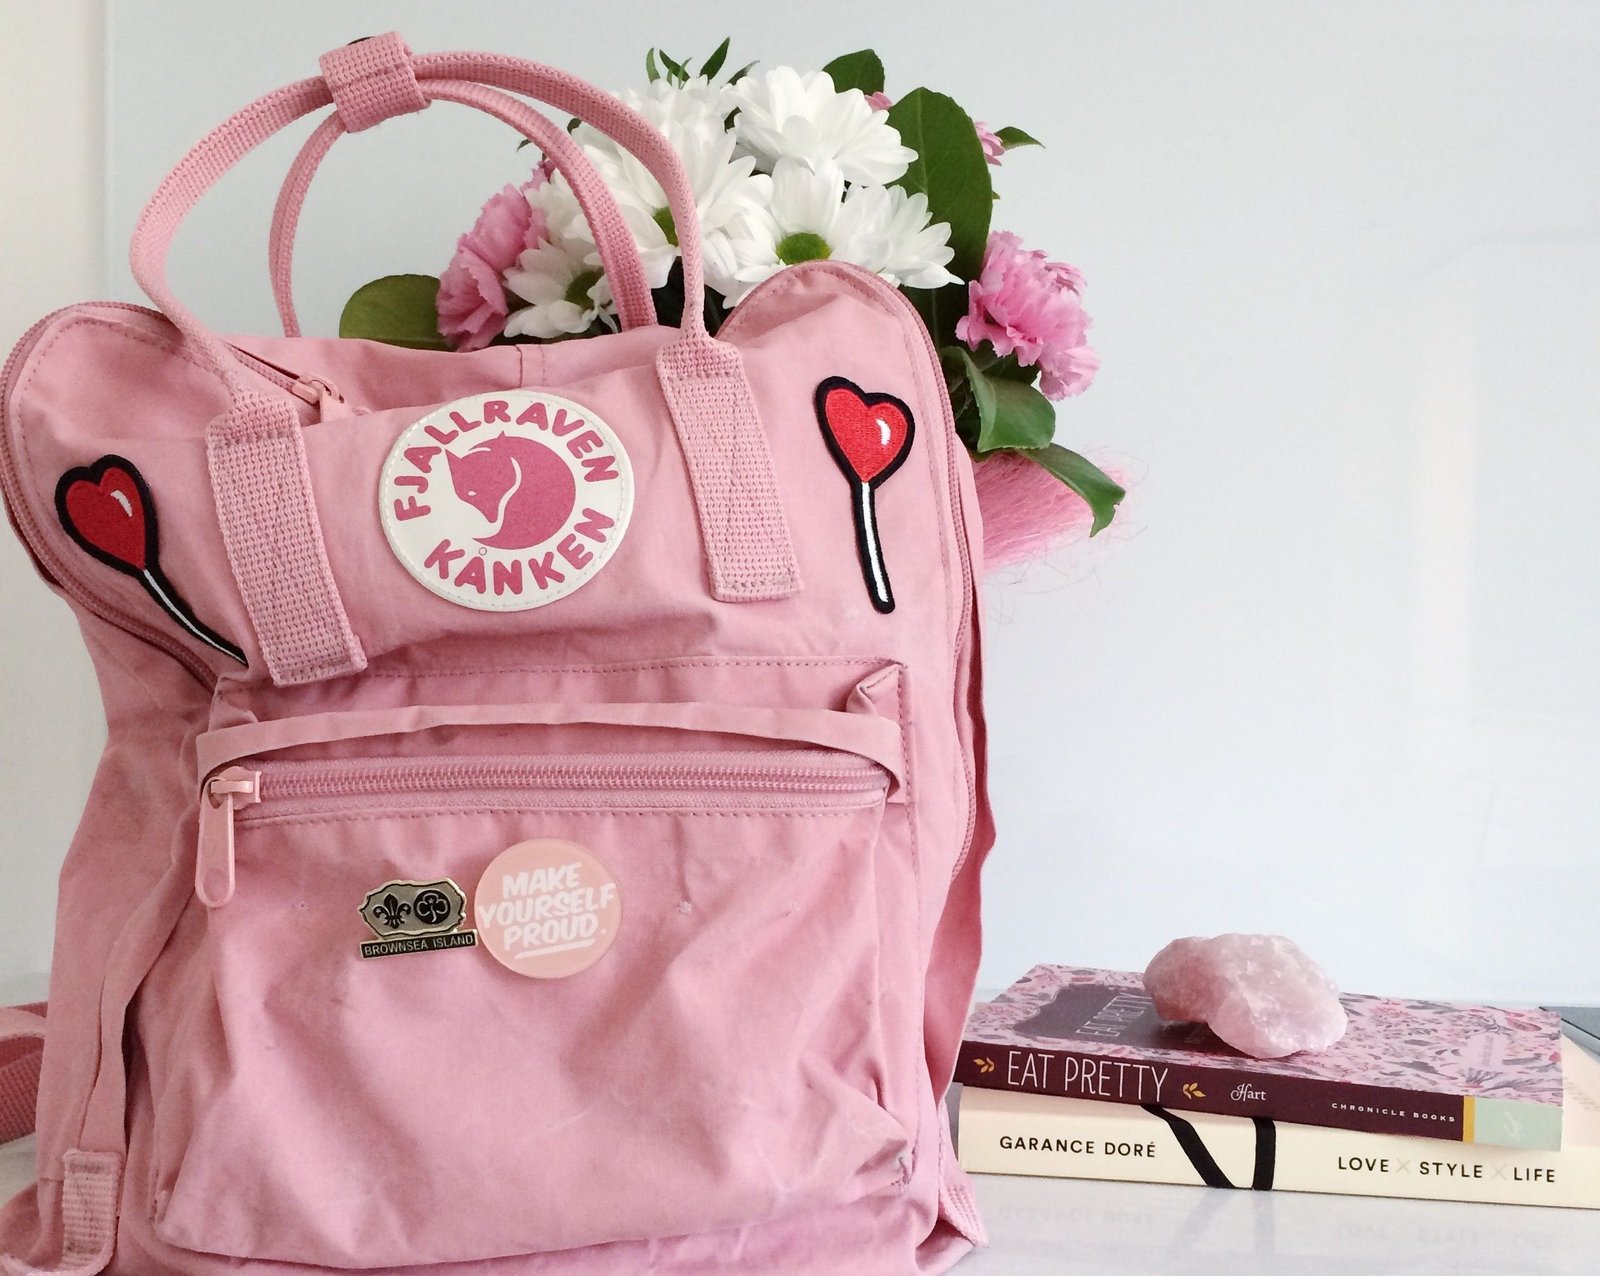 Best Pink Backpacks - Bestbackpack